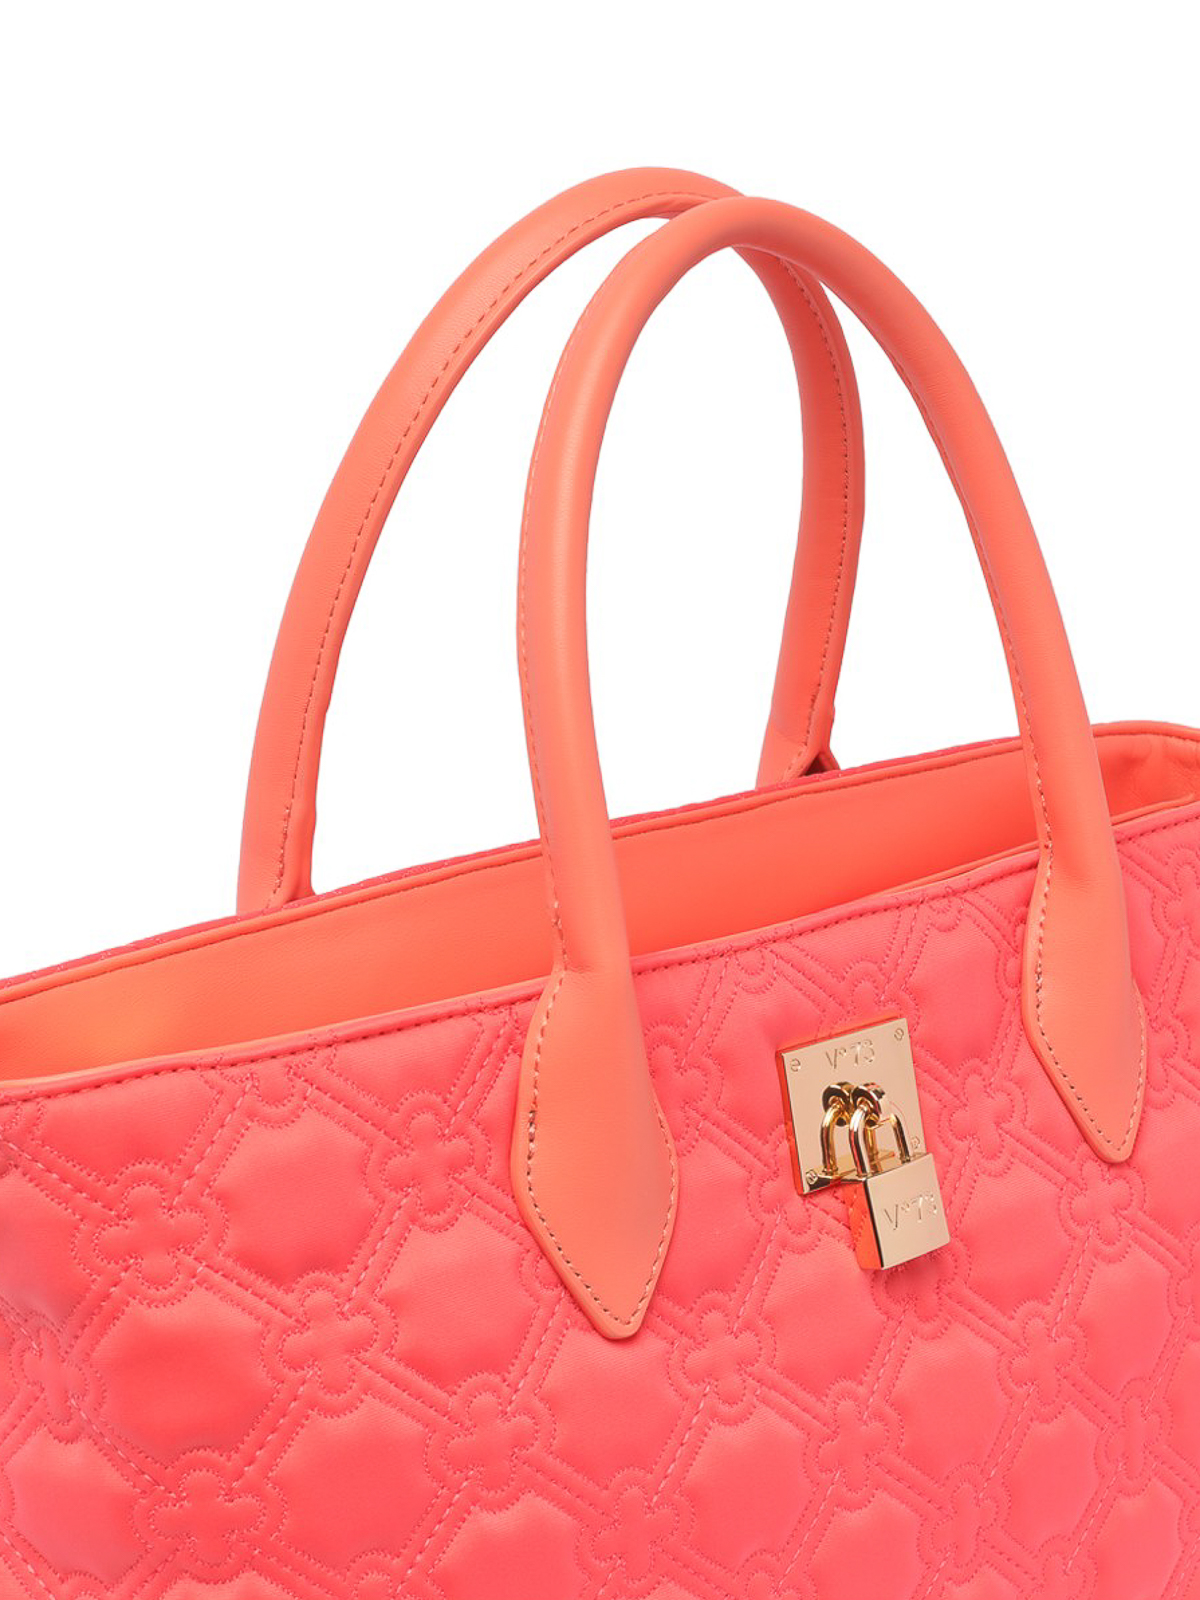 Shop Lv Bucket Bag Strap online